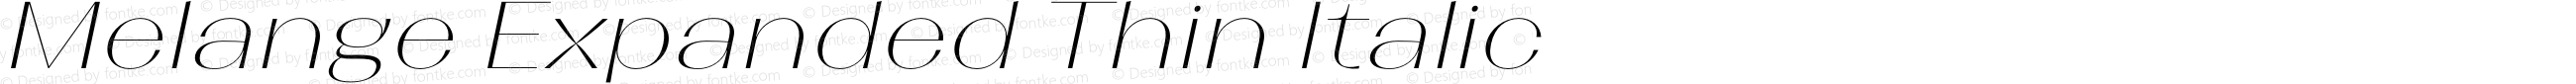 Melange Expanded Thin Italic